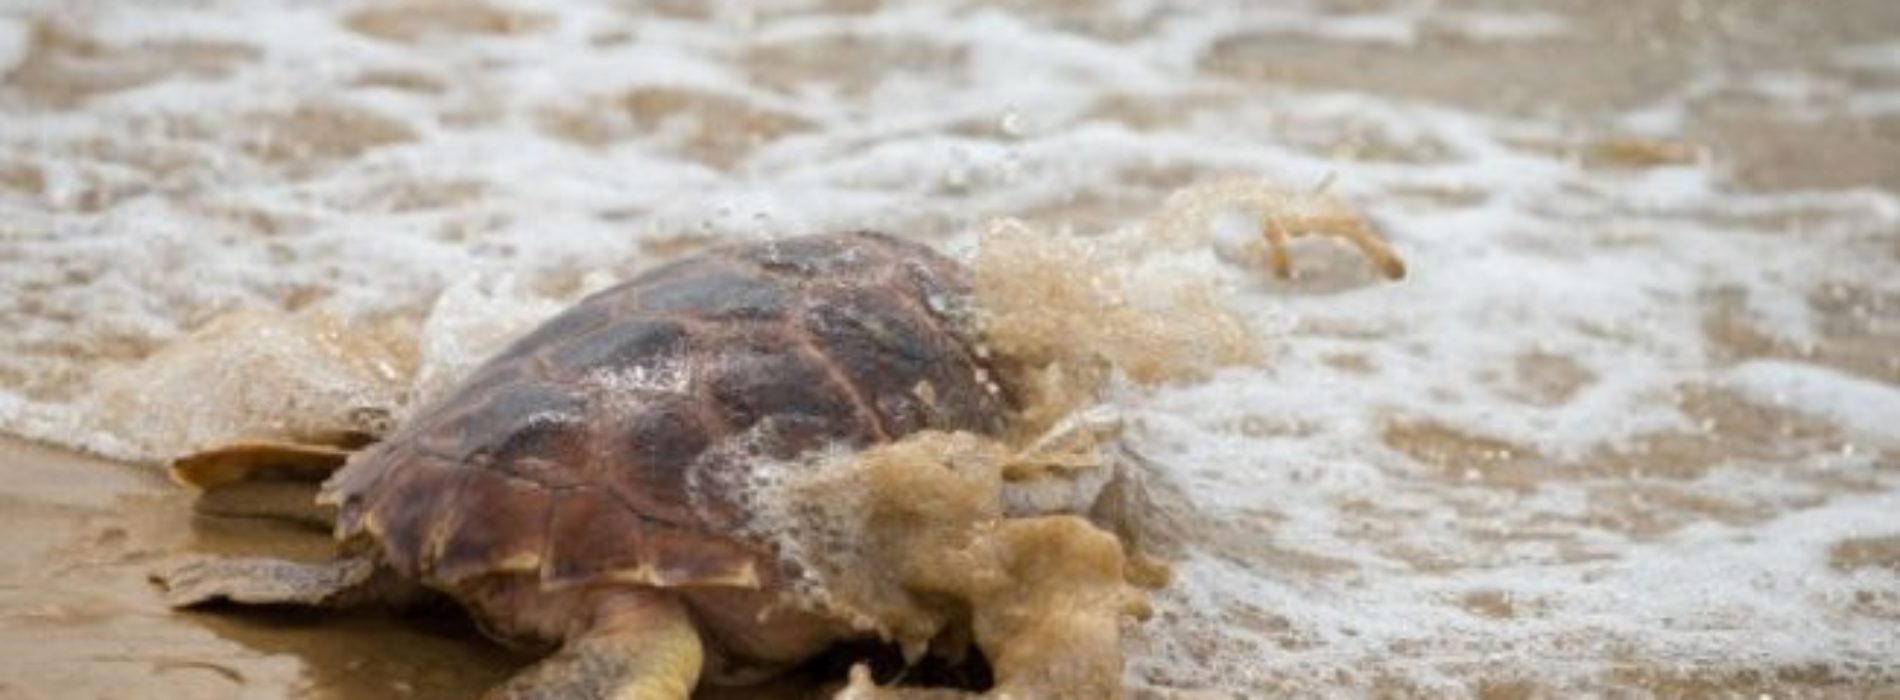 ¿Qué está pasando en las costas mexicanas? Ahora encuentran
105 tortugas muertas